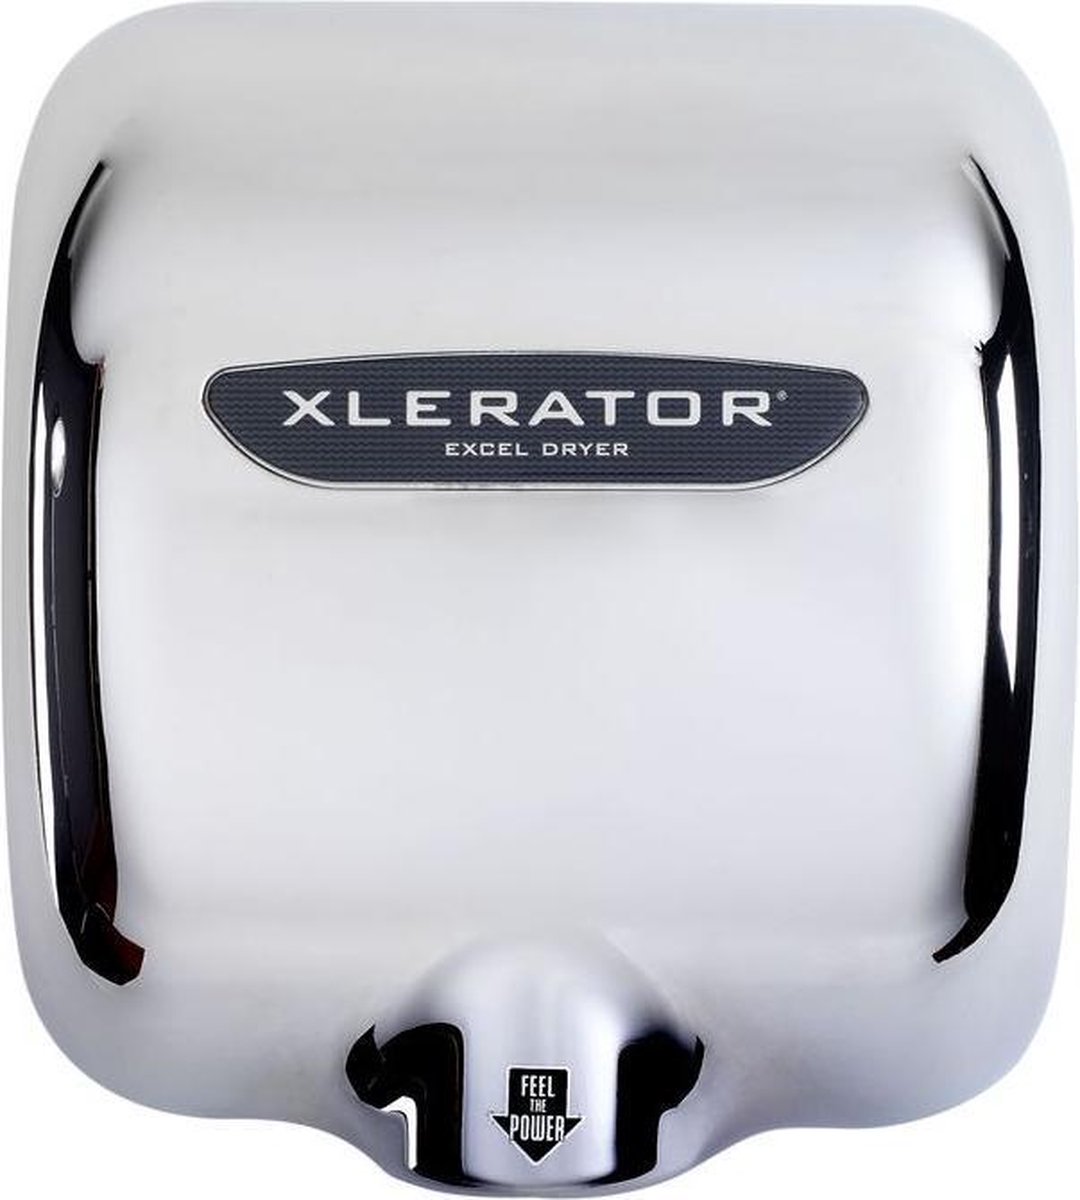 Milieuvriendelijke en zuinige handdroger Xlerator XL-C met 1400 watt